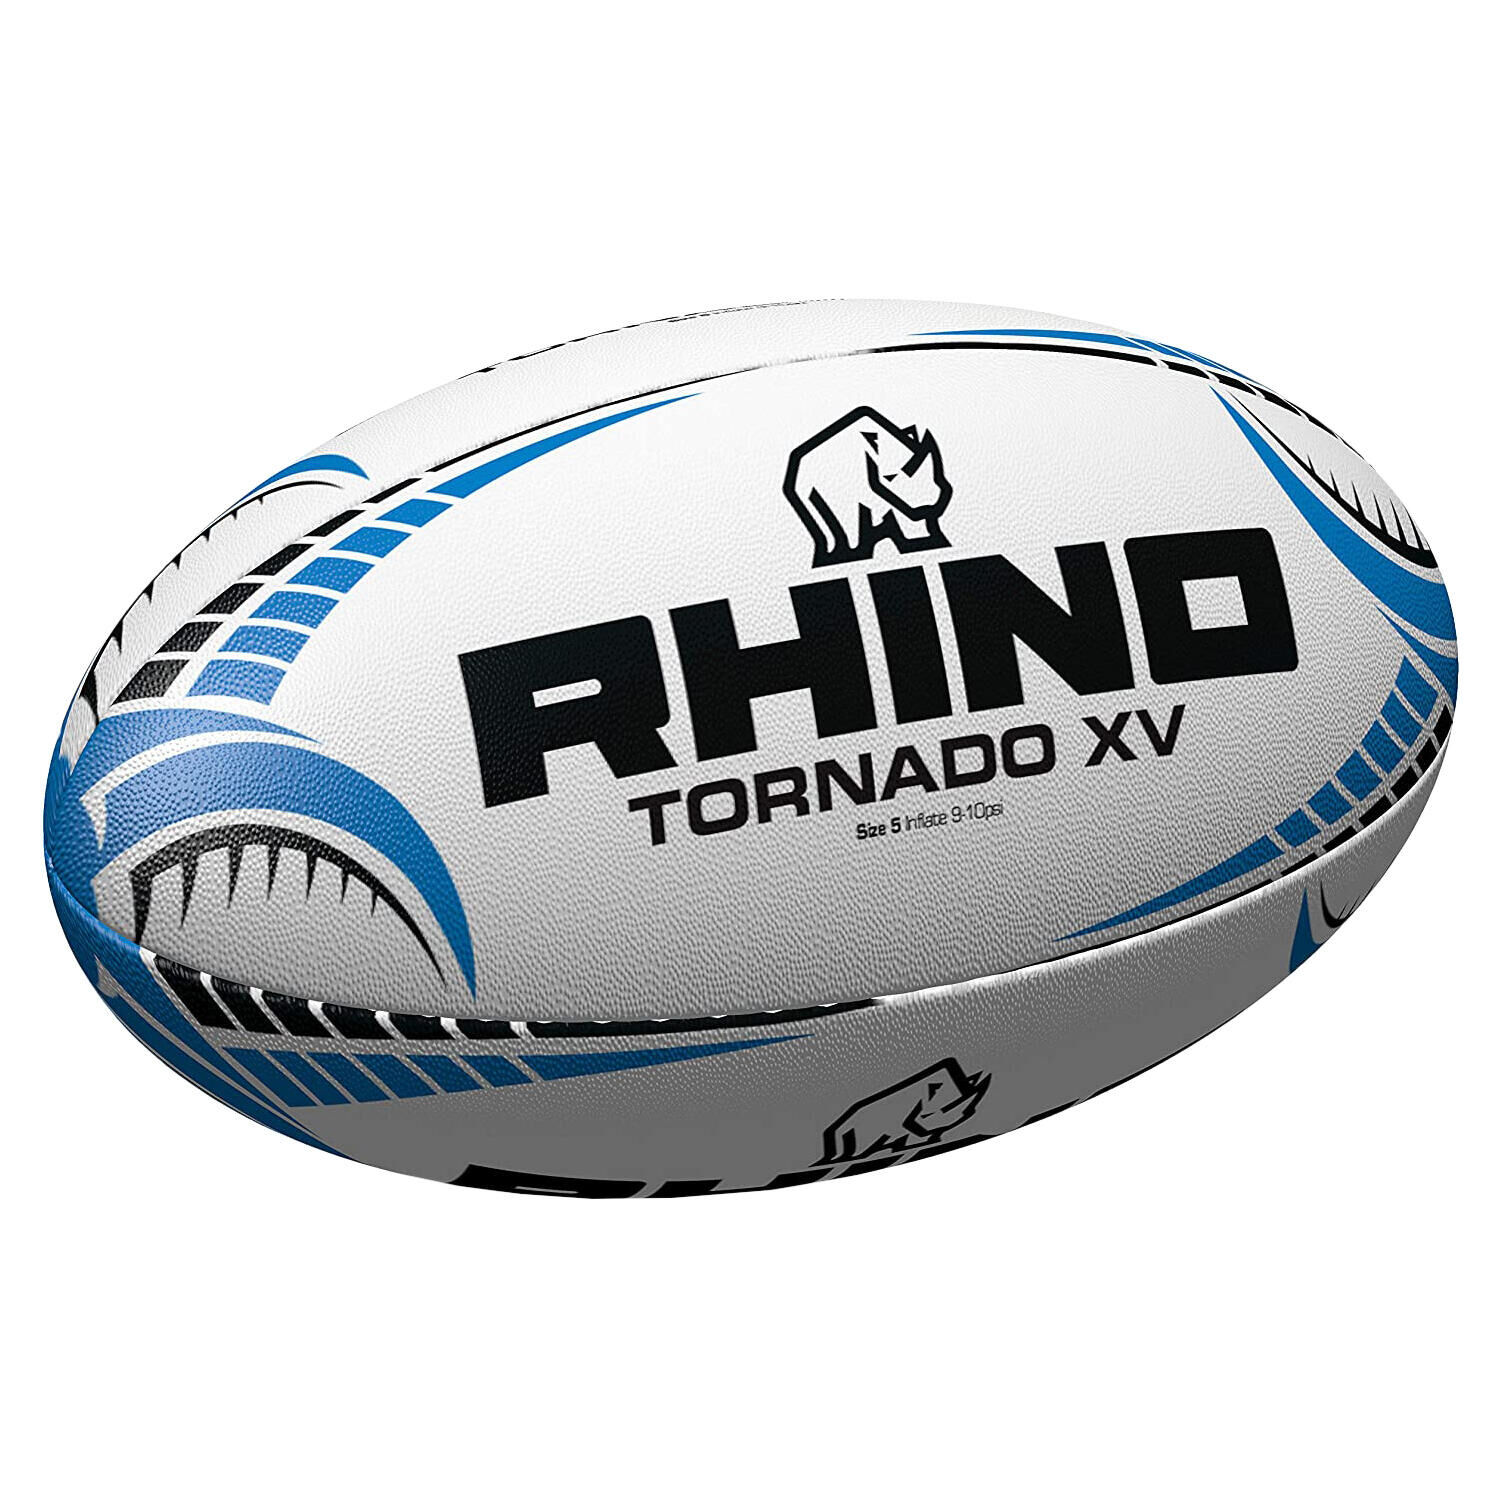 RHINO Tornado XV Rugby Ball (White/Blue/Black)